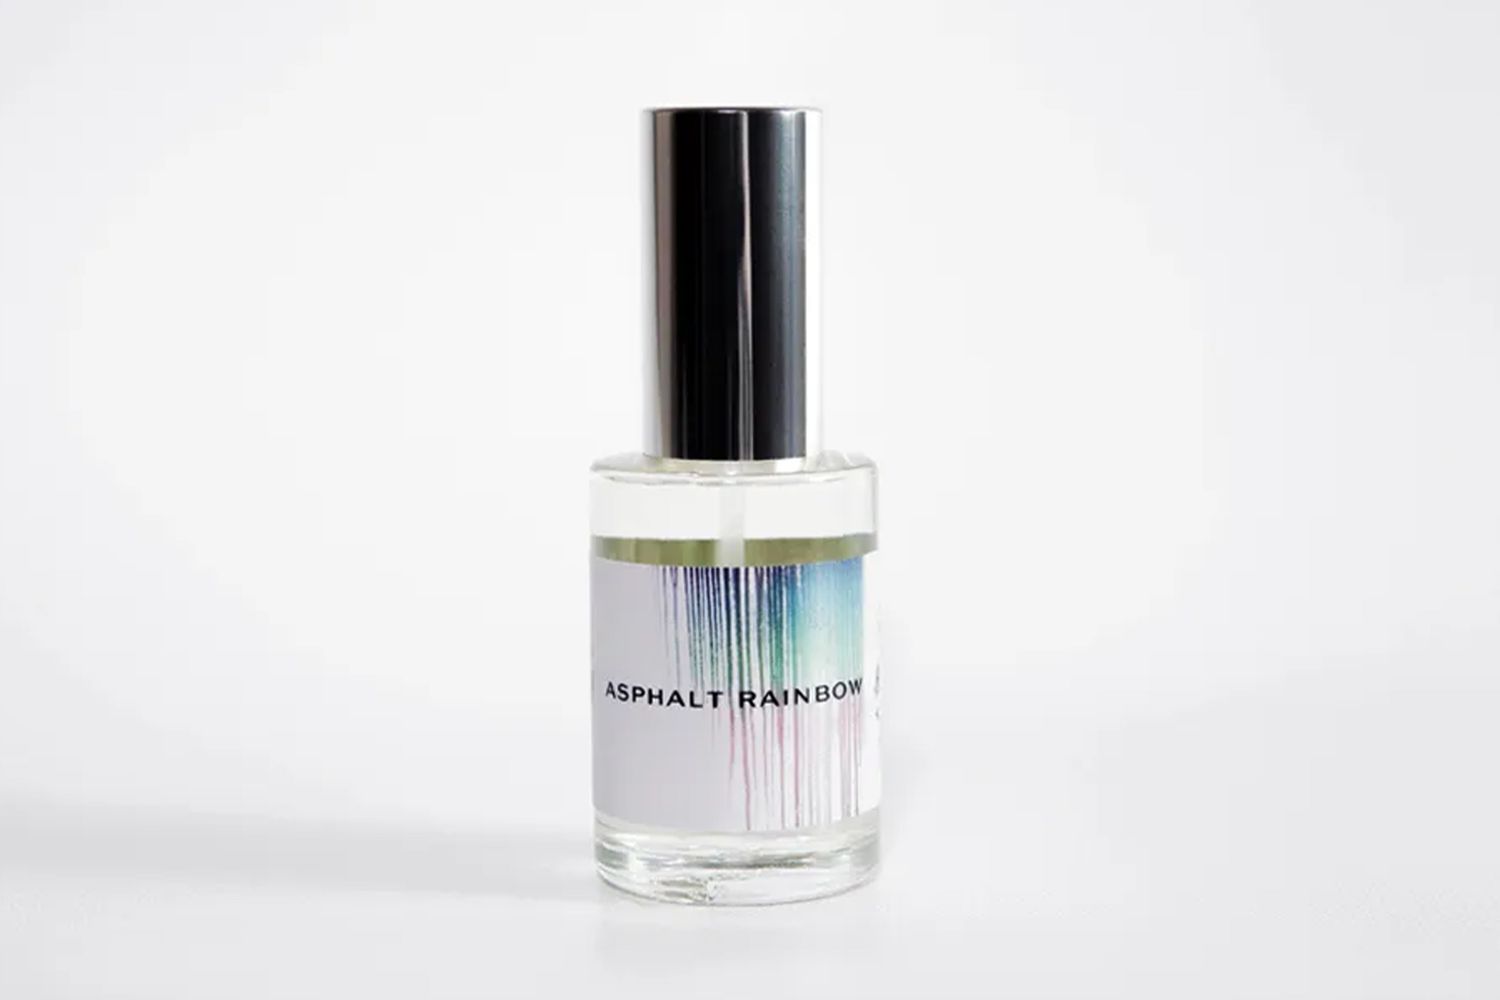 'Asphalt Rainbow' Perfume